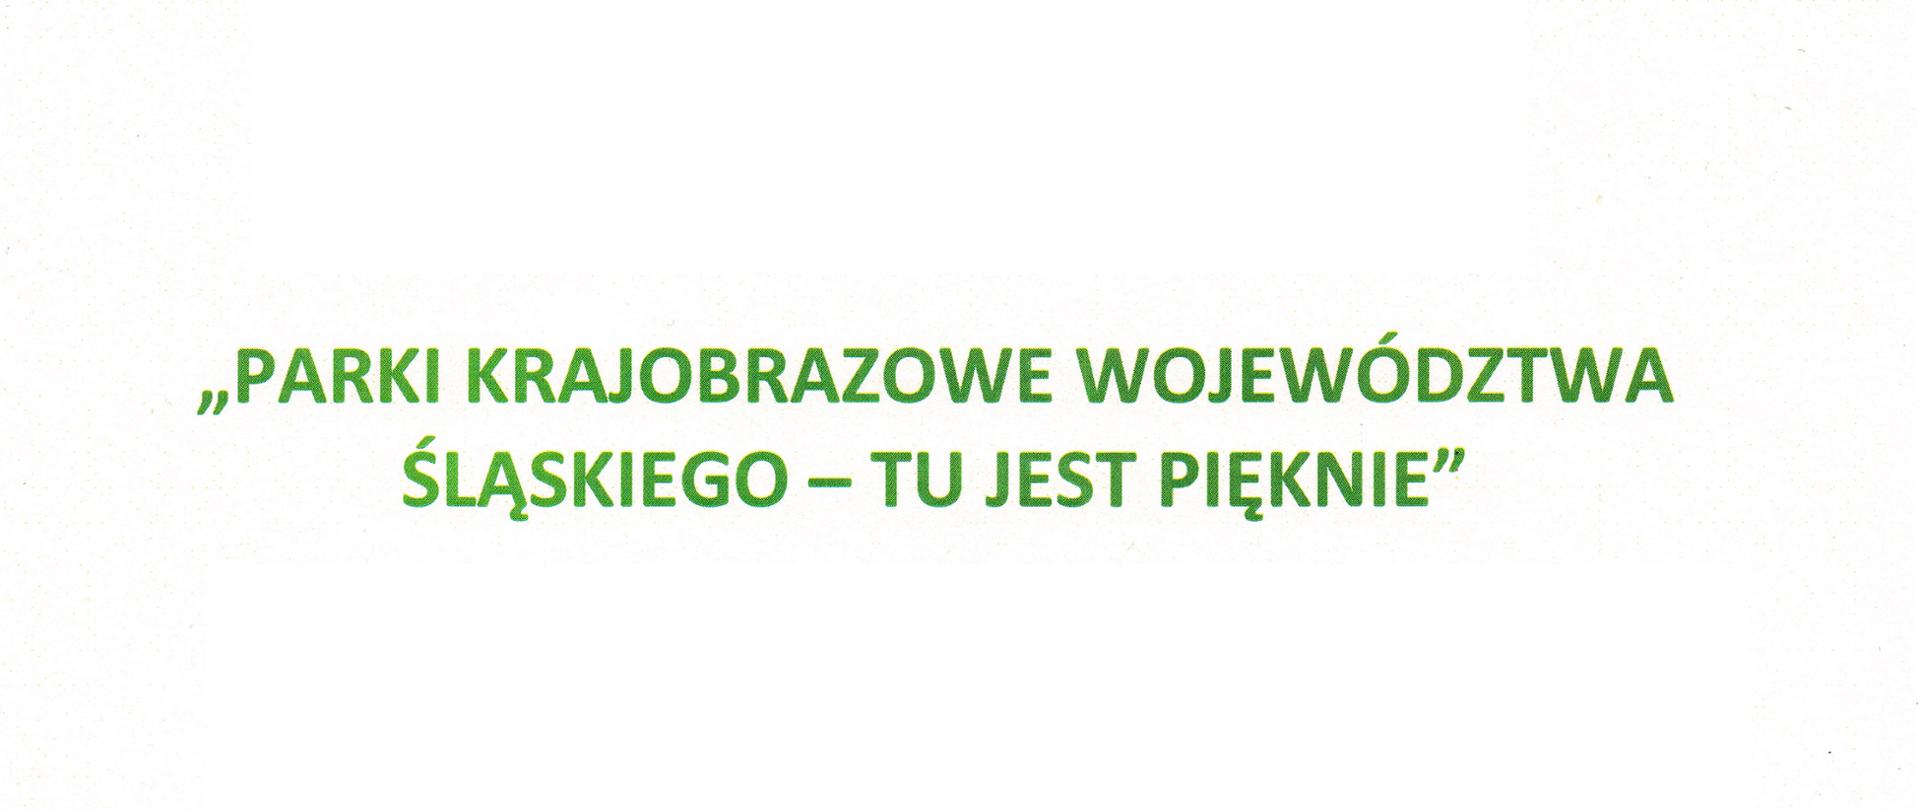 Napis: "Parki krajobrazowe województwa śląskiego - tu jest pięknie"